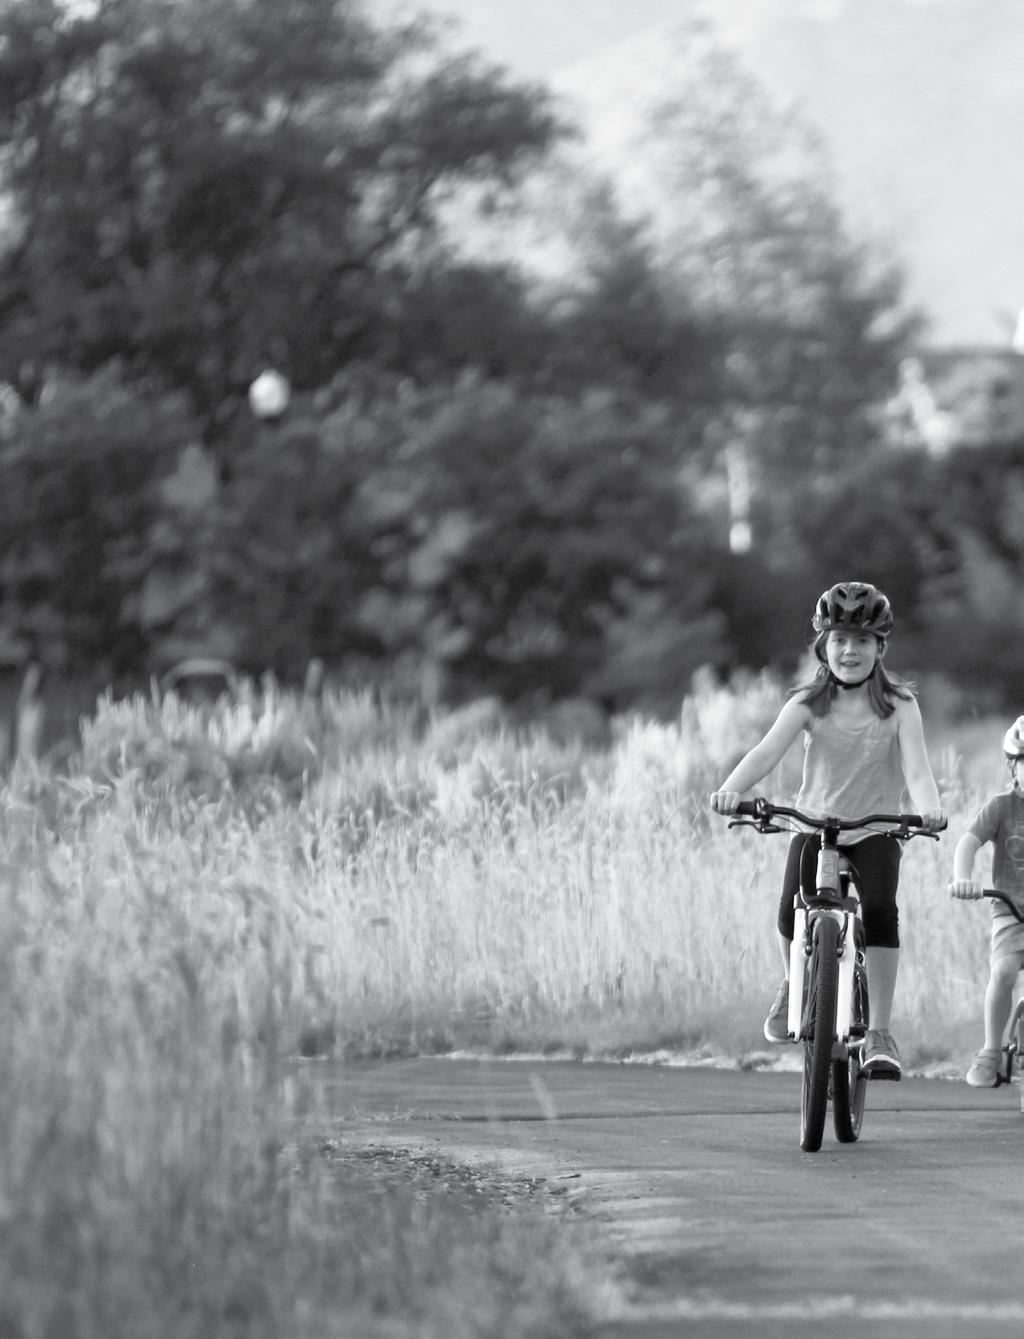 KID s L héritage des vélos haute performance de Cannondale apparaît de manière évidente dans toute notre gamme de vélos pour enfants.